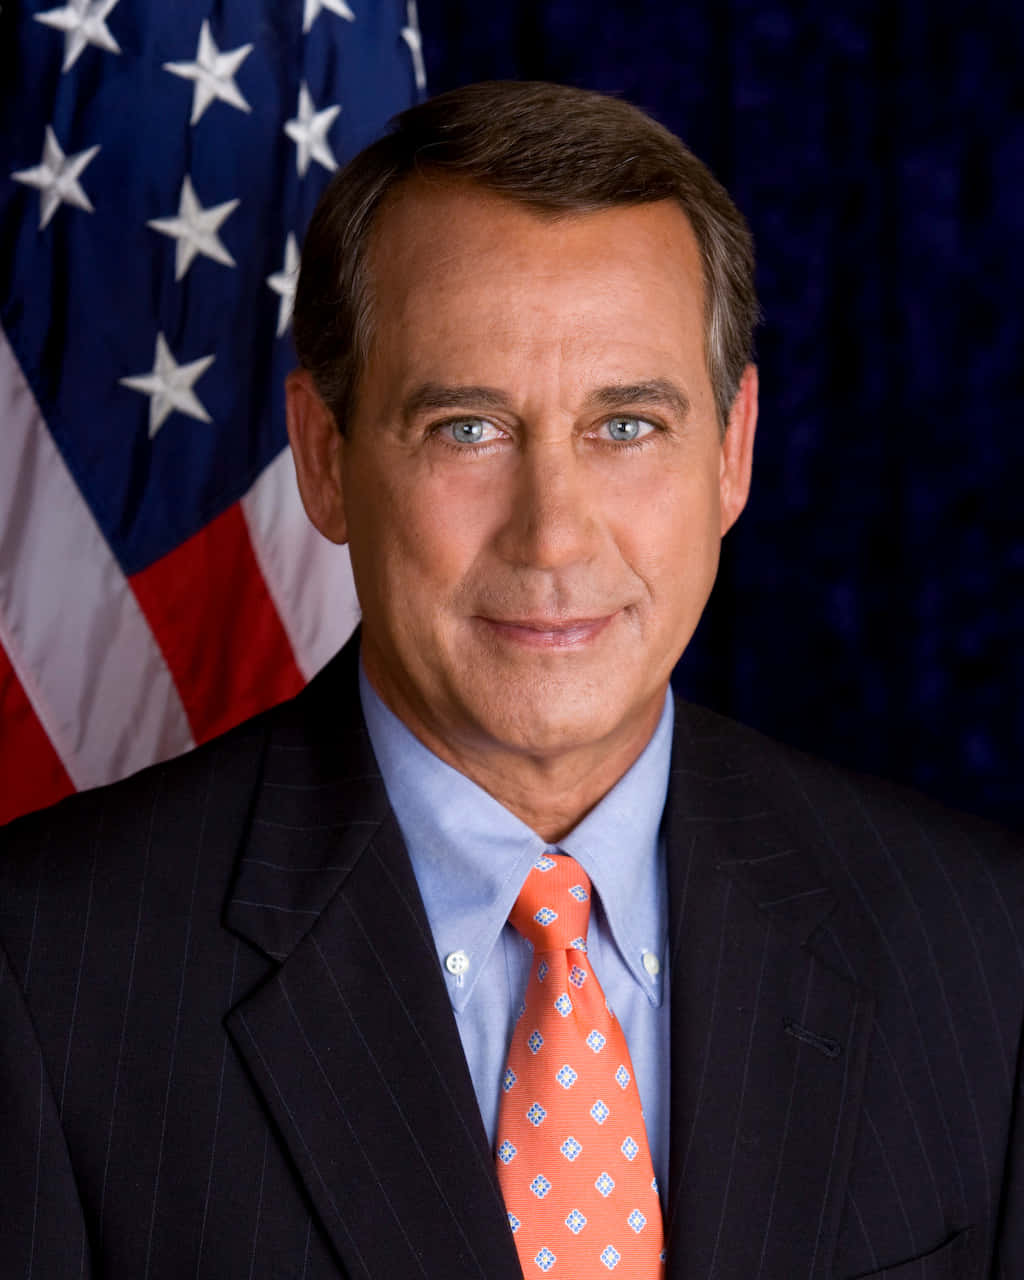 John Boehner formel skud-blur: 